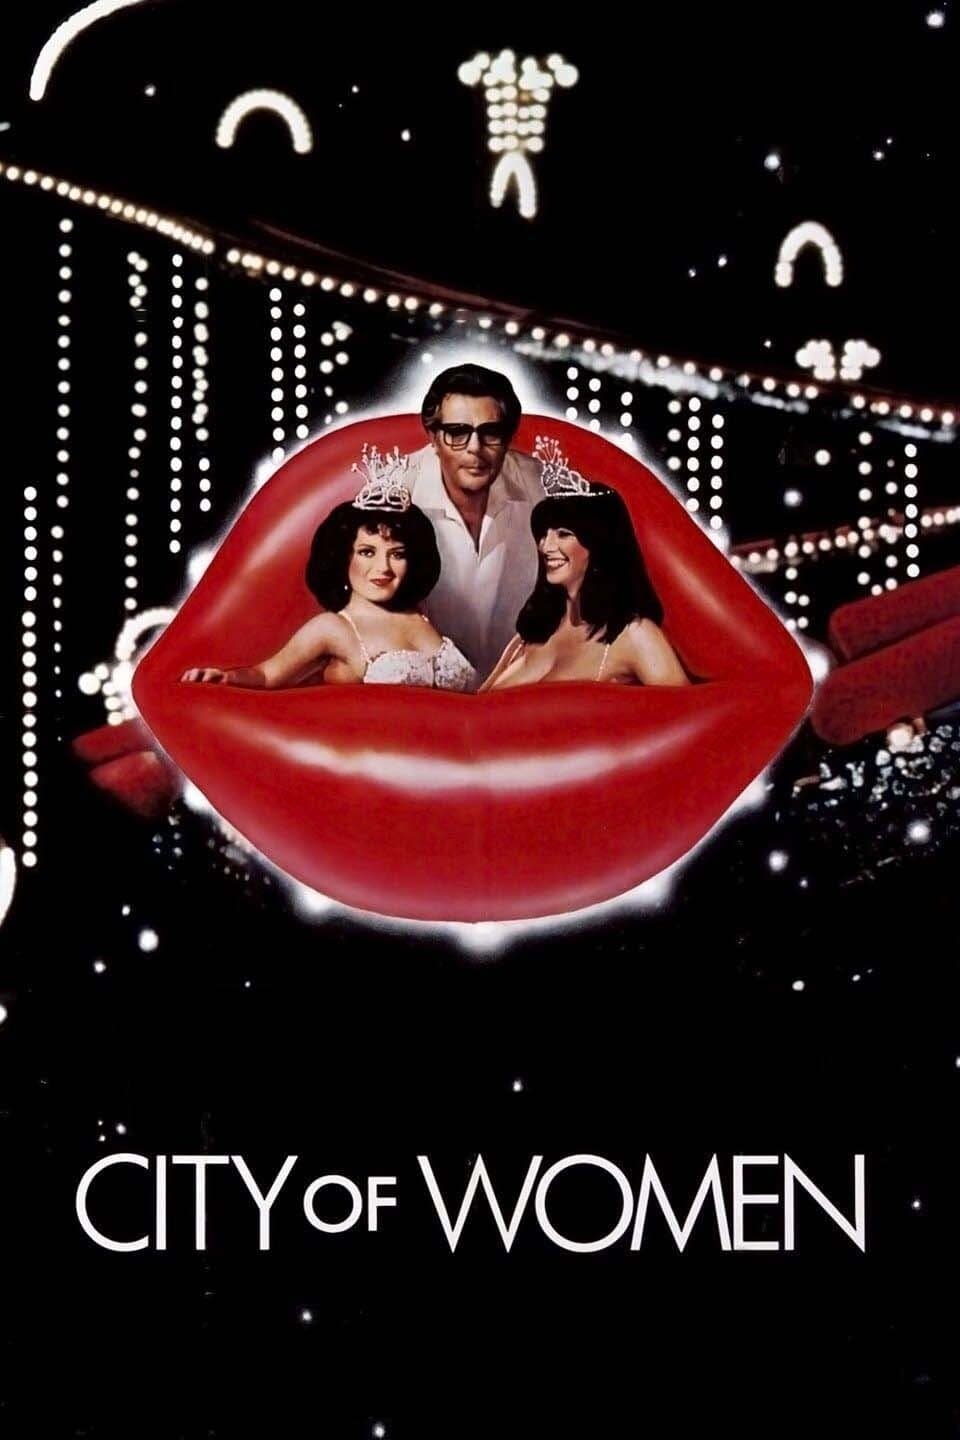 La ciudad de las mujeres (1980)